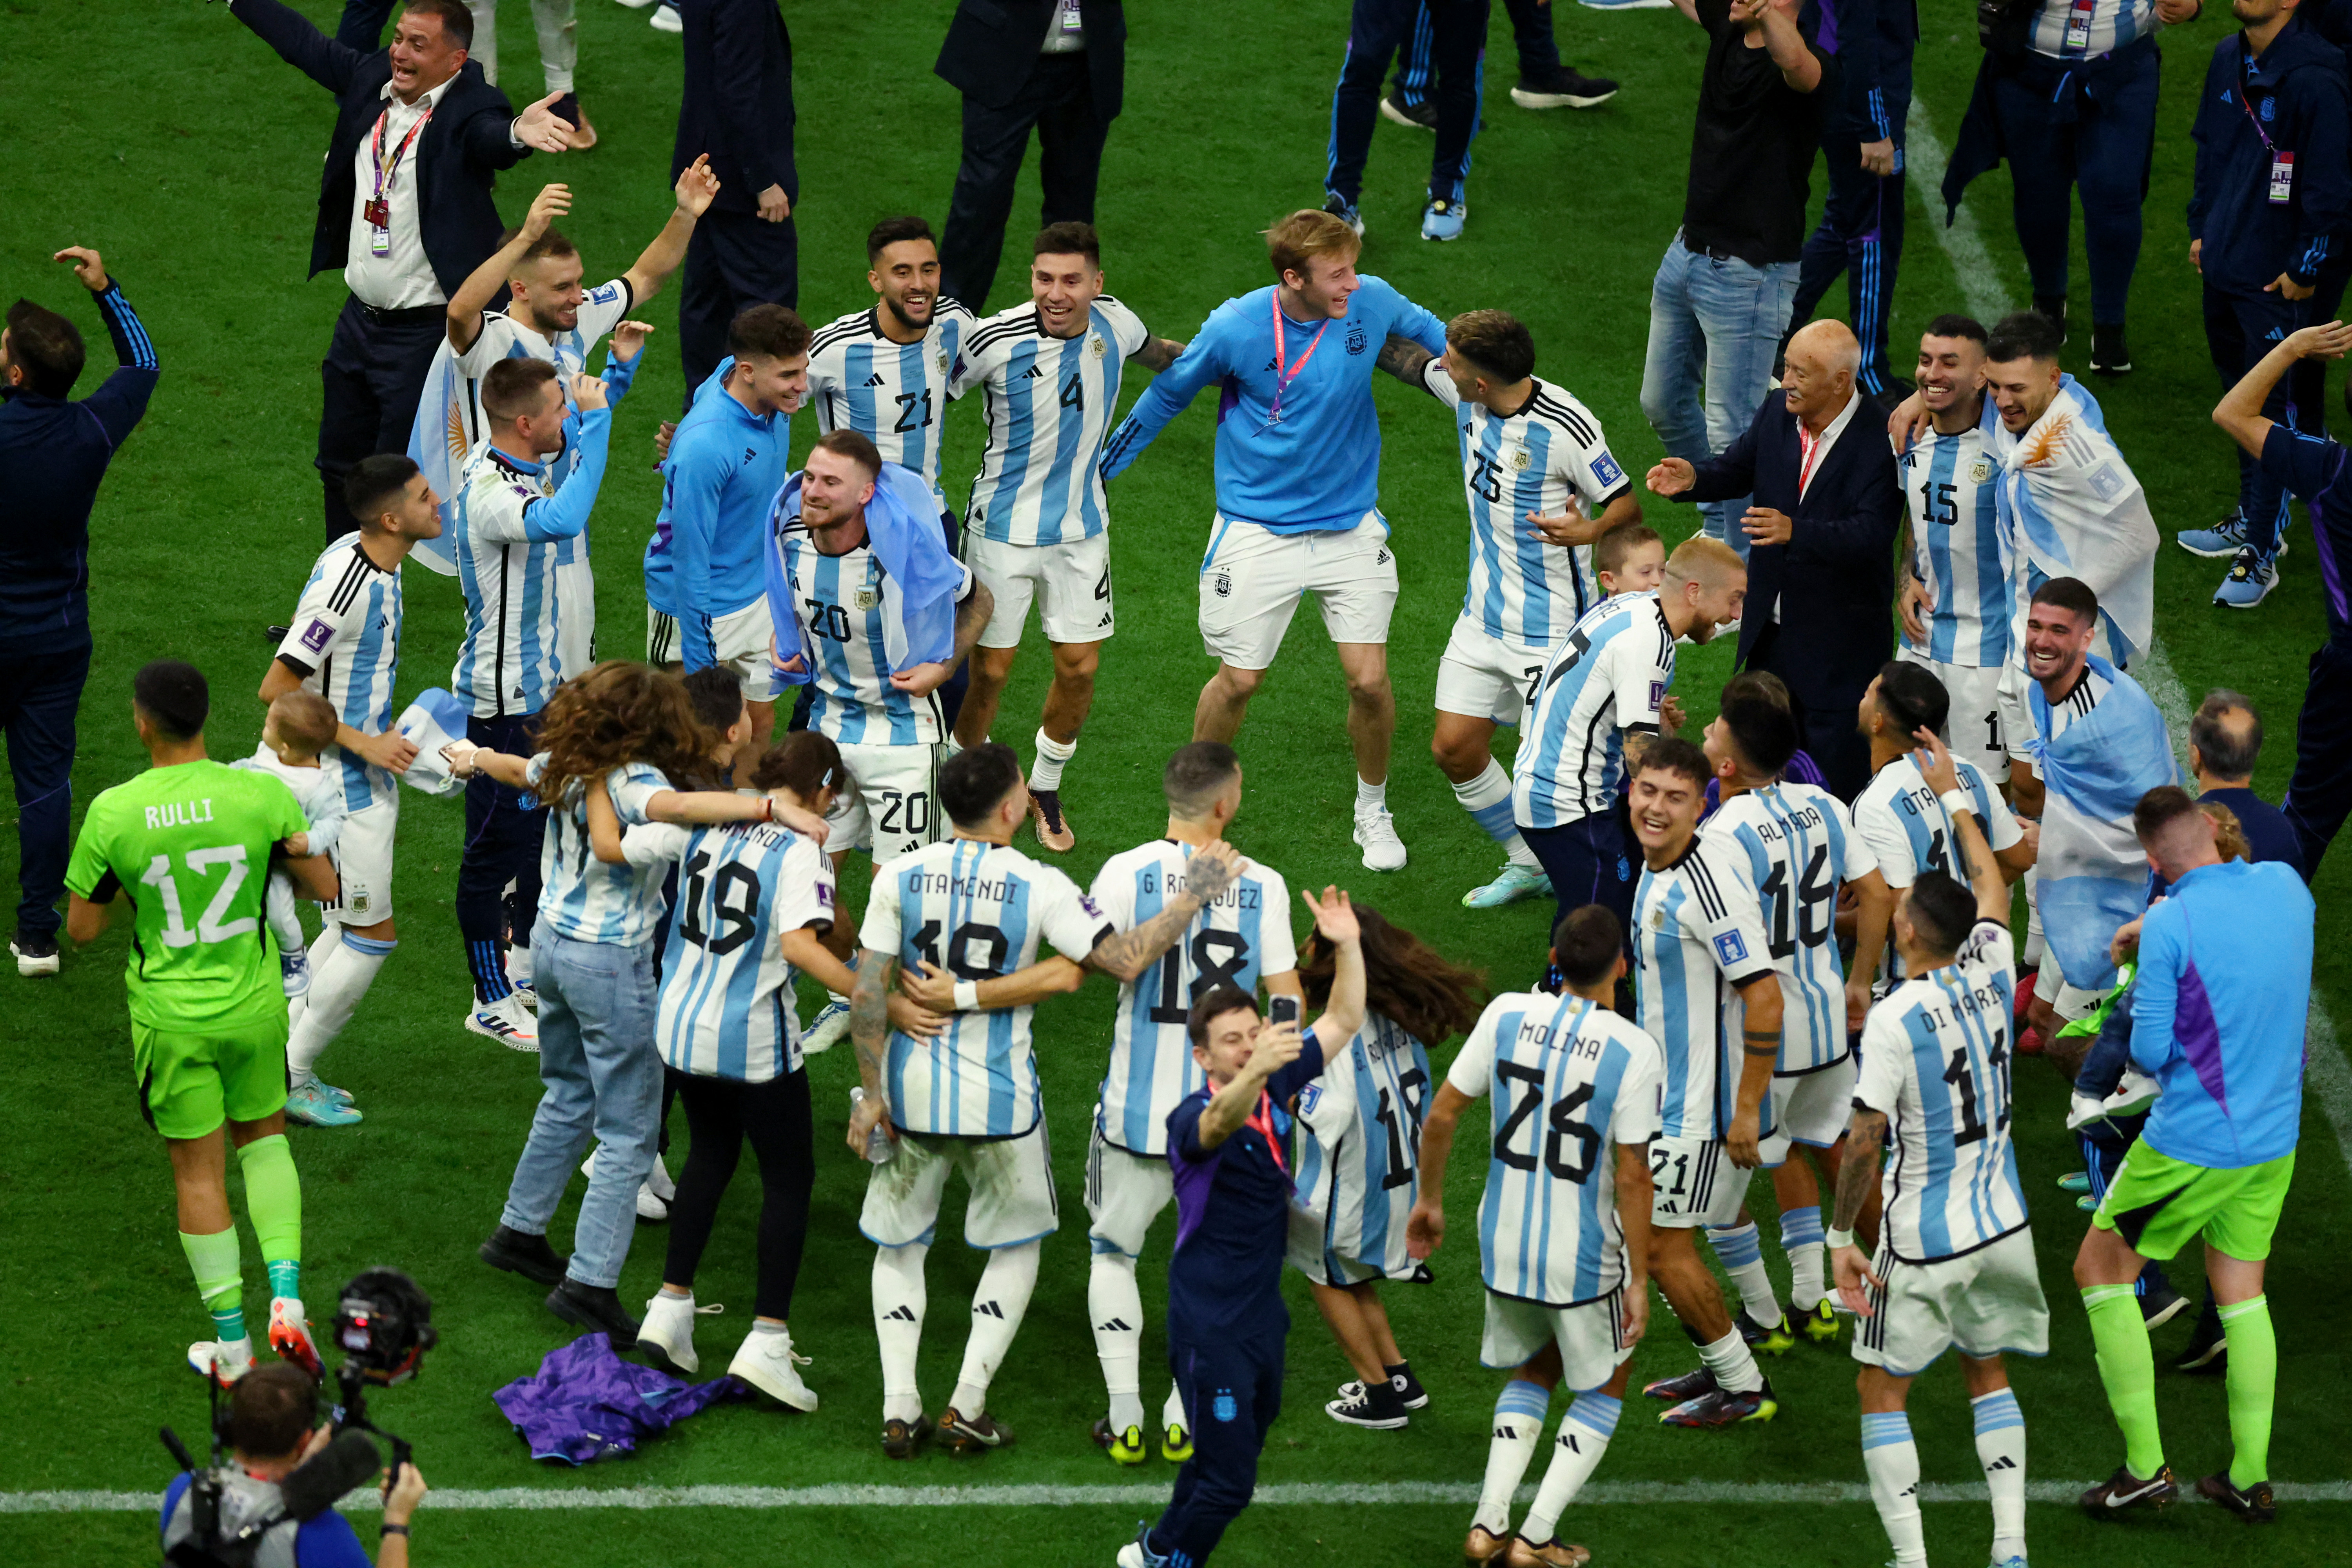 La ronda de festejos de Argentina en el césped del estadio. Éxtasis total (REUTERS/Molly Darlington)